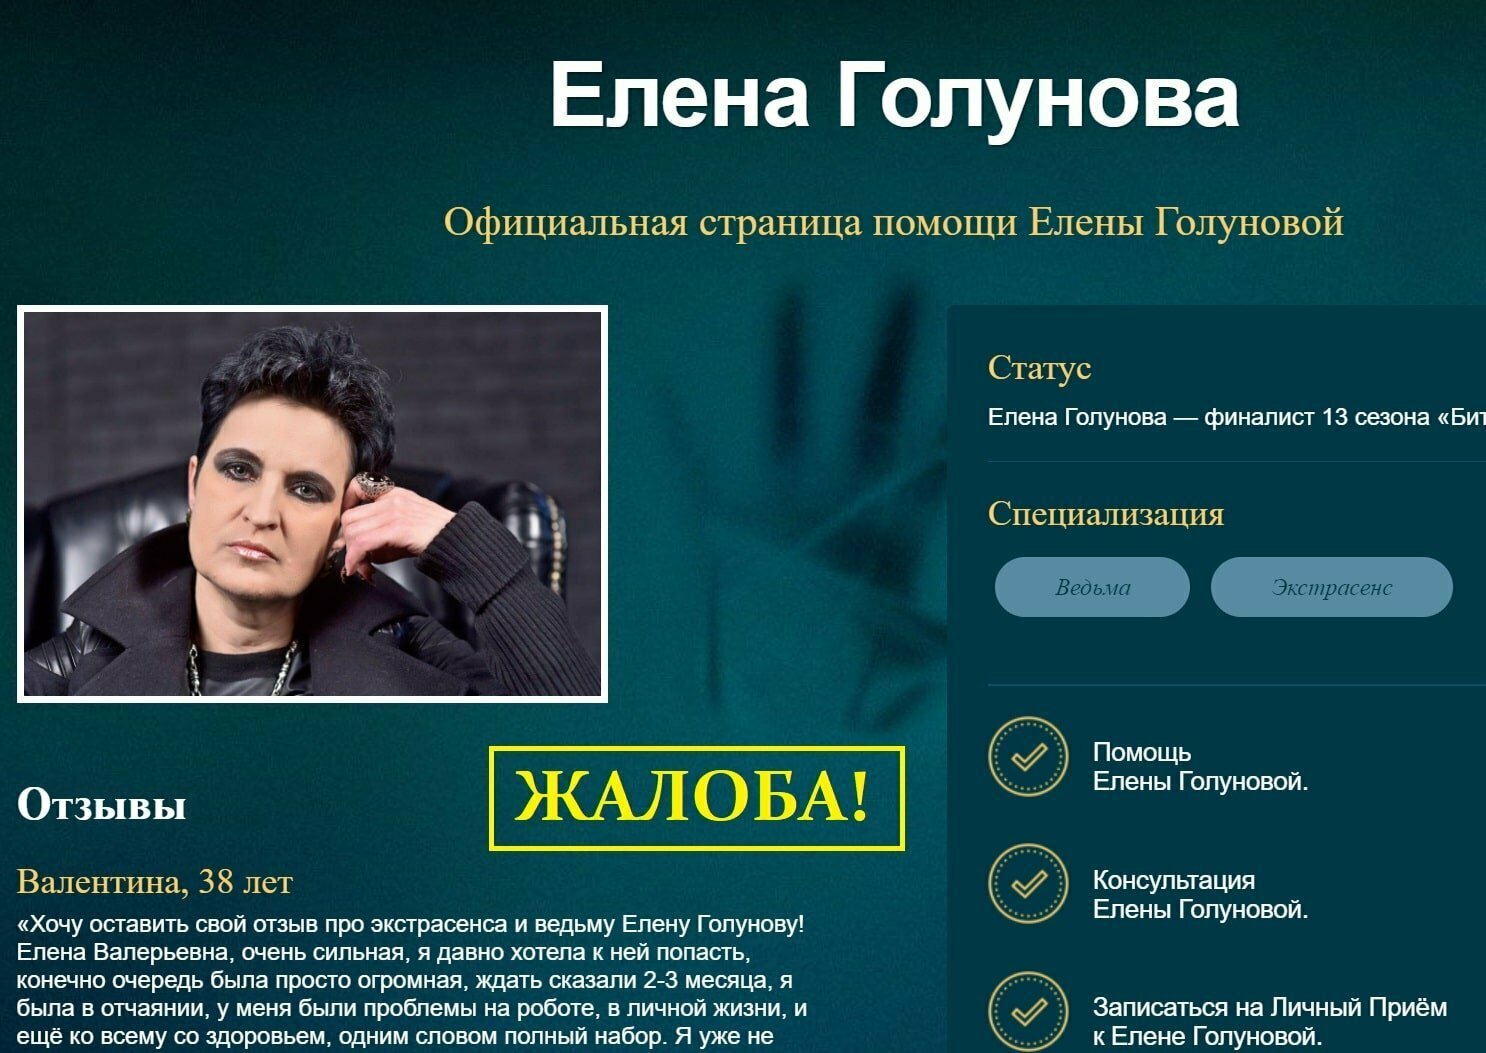 Сильнейшая ведьма из Новосибирска Елена Голунова приедет на родину 21 февраля